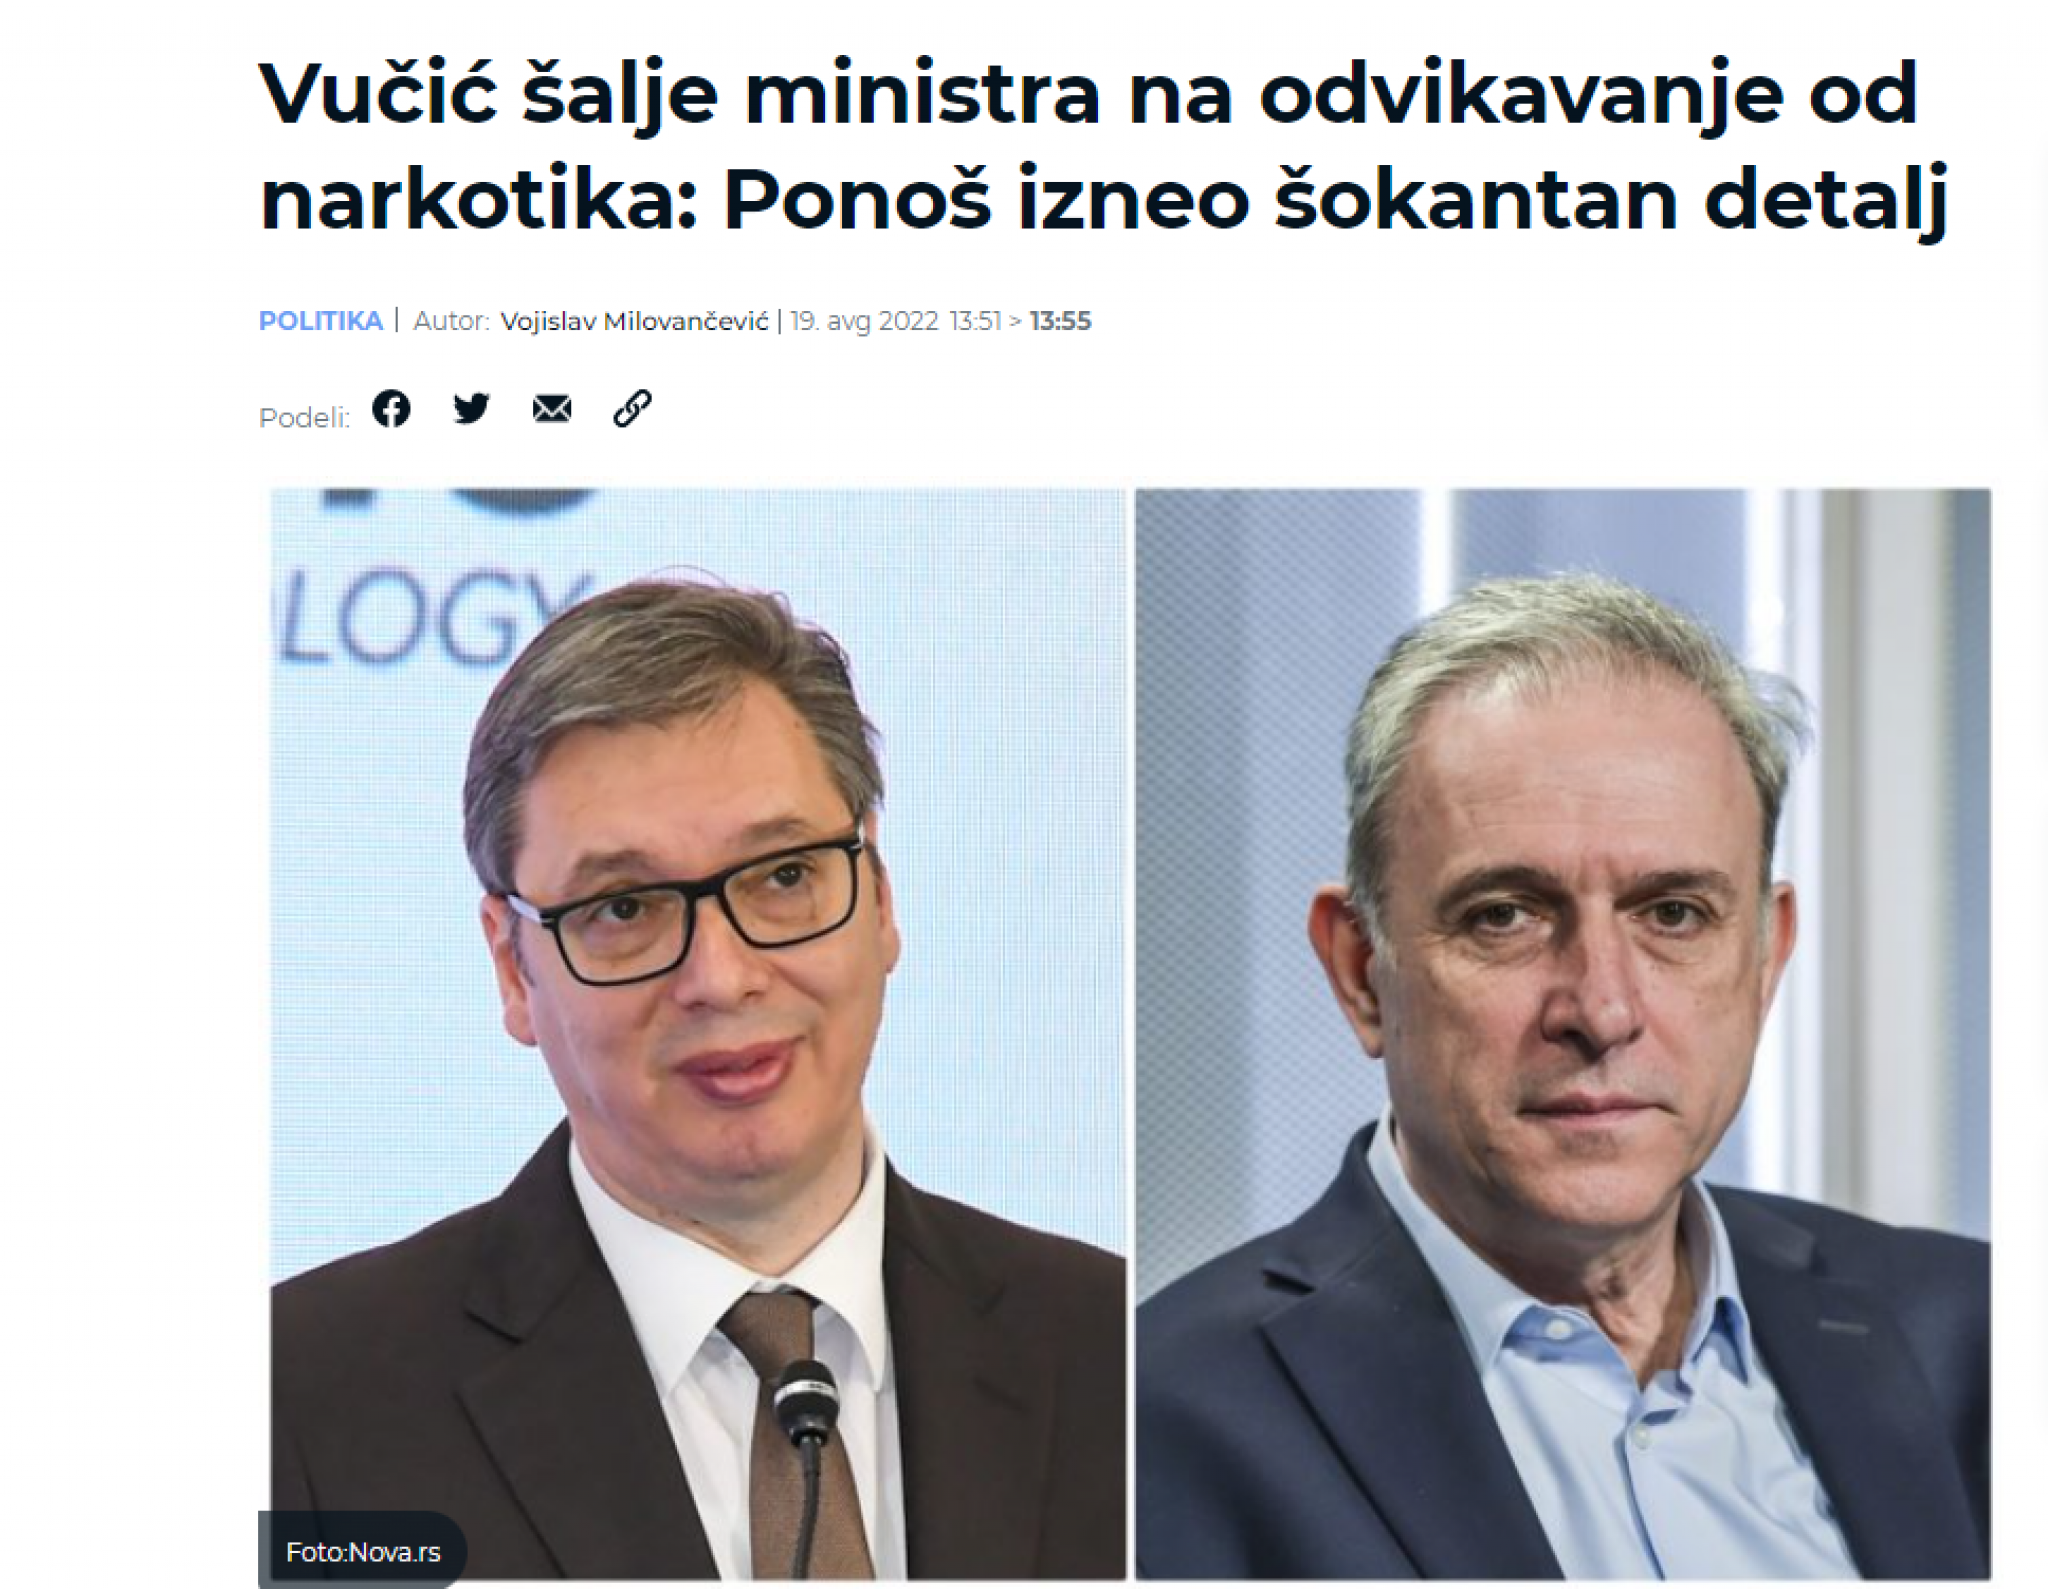 PO DIREKTIVI HRVATSKIH GAZDI Ponoš se sveti biračima u Srbiji jer mu nisu dali da dođe na vlast!